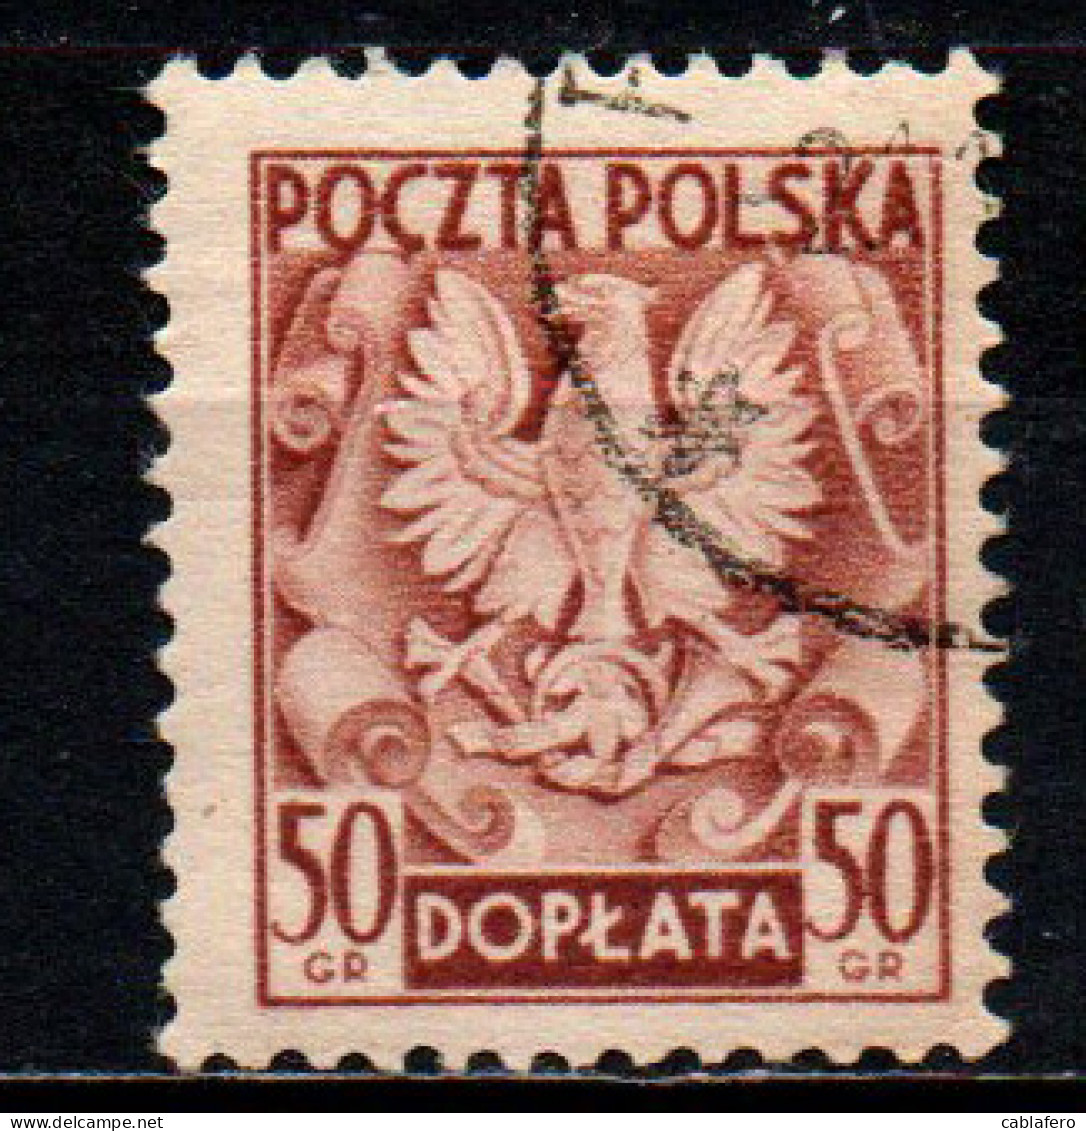 POLONIA - 1950 - Polish Eagle - USATO - Segnatasse